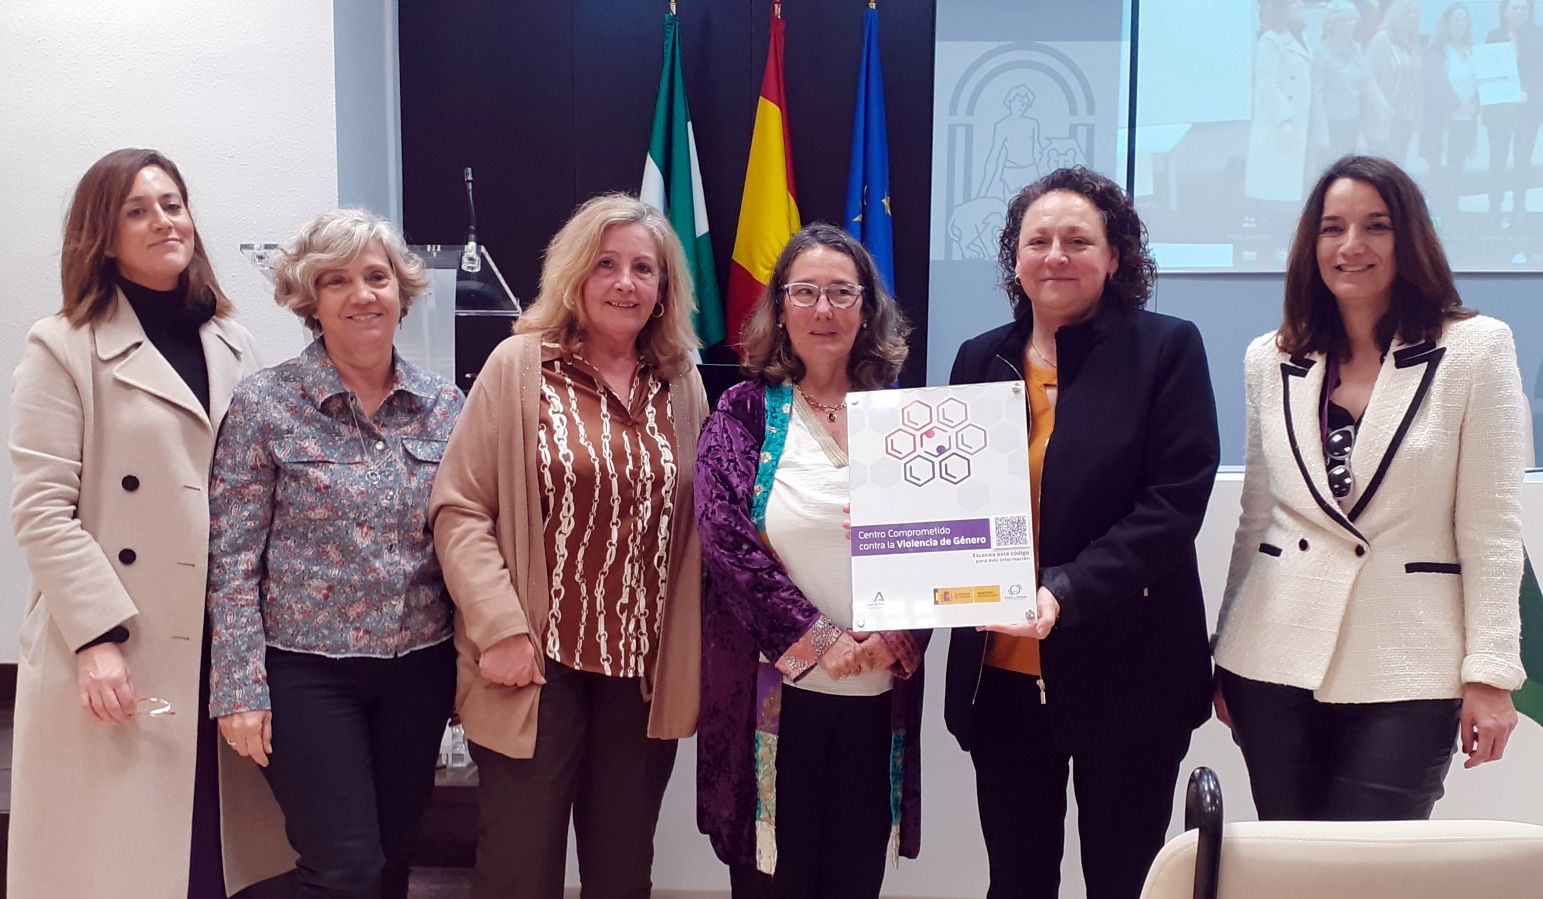 El Área de Gestión Sanitaria Sur de Sevilla se certifica como Centro Comprometido contra la Violencia de Género